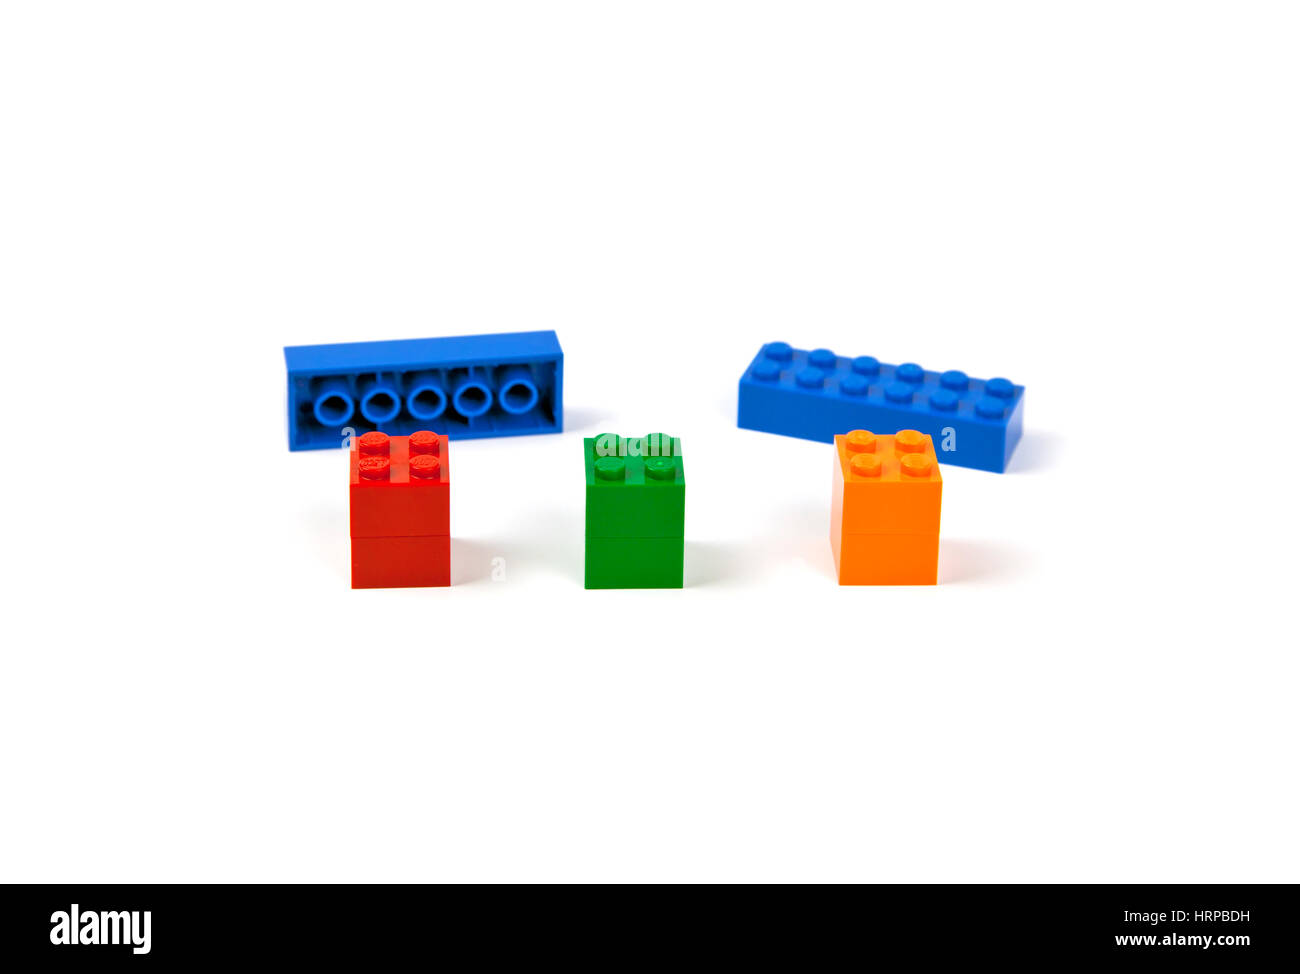 Lego briques ou de morceaux prêts à être montés sur trois jetées pour former un modèle d'un pont ou d'un viaduc. Banque D'Images